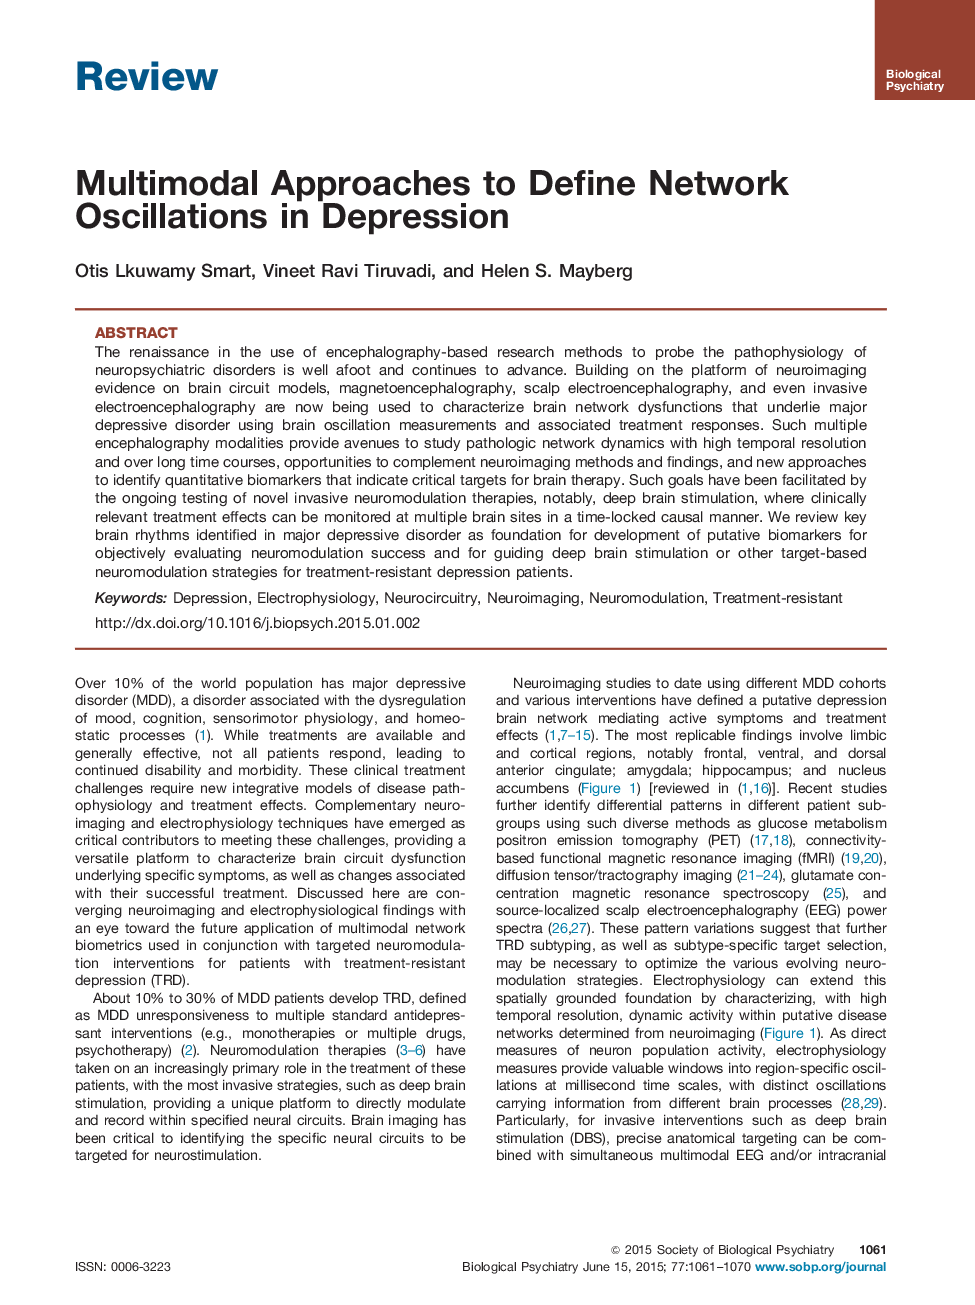 رویکردهای چندجمله ای برای تعریف نوسانات شبکه در افسردگی 